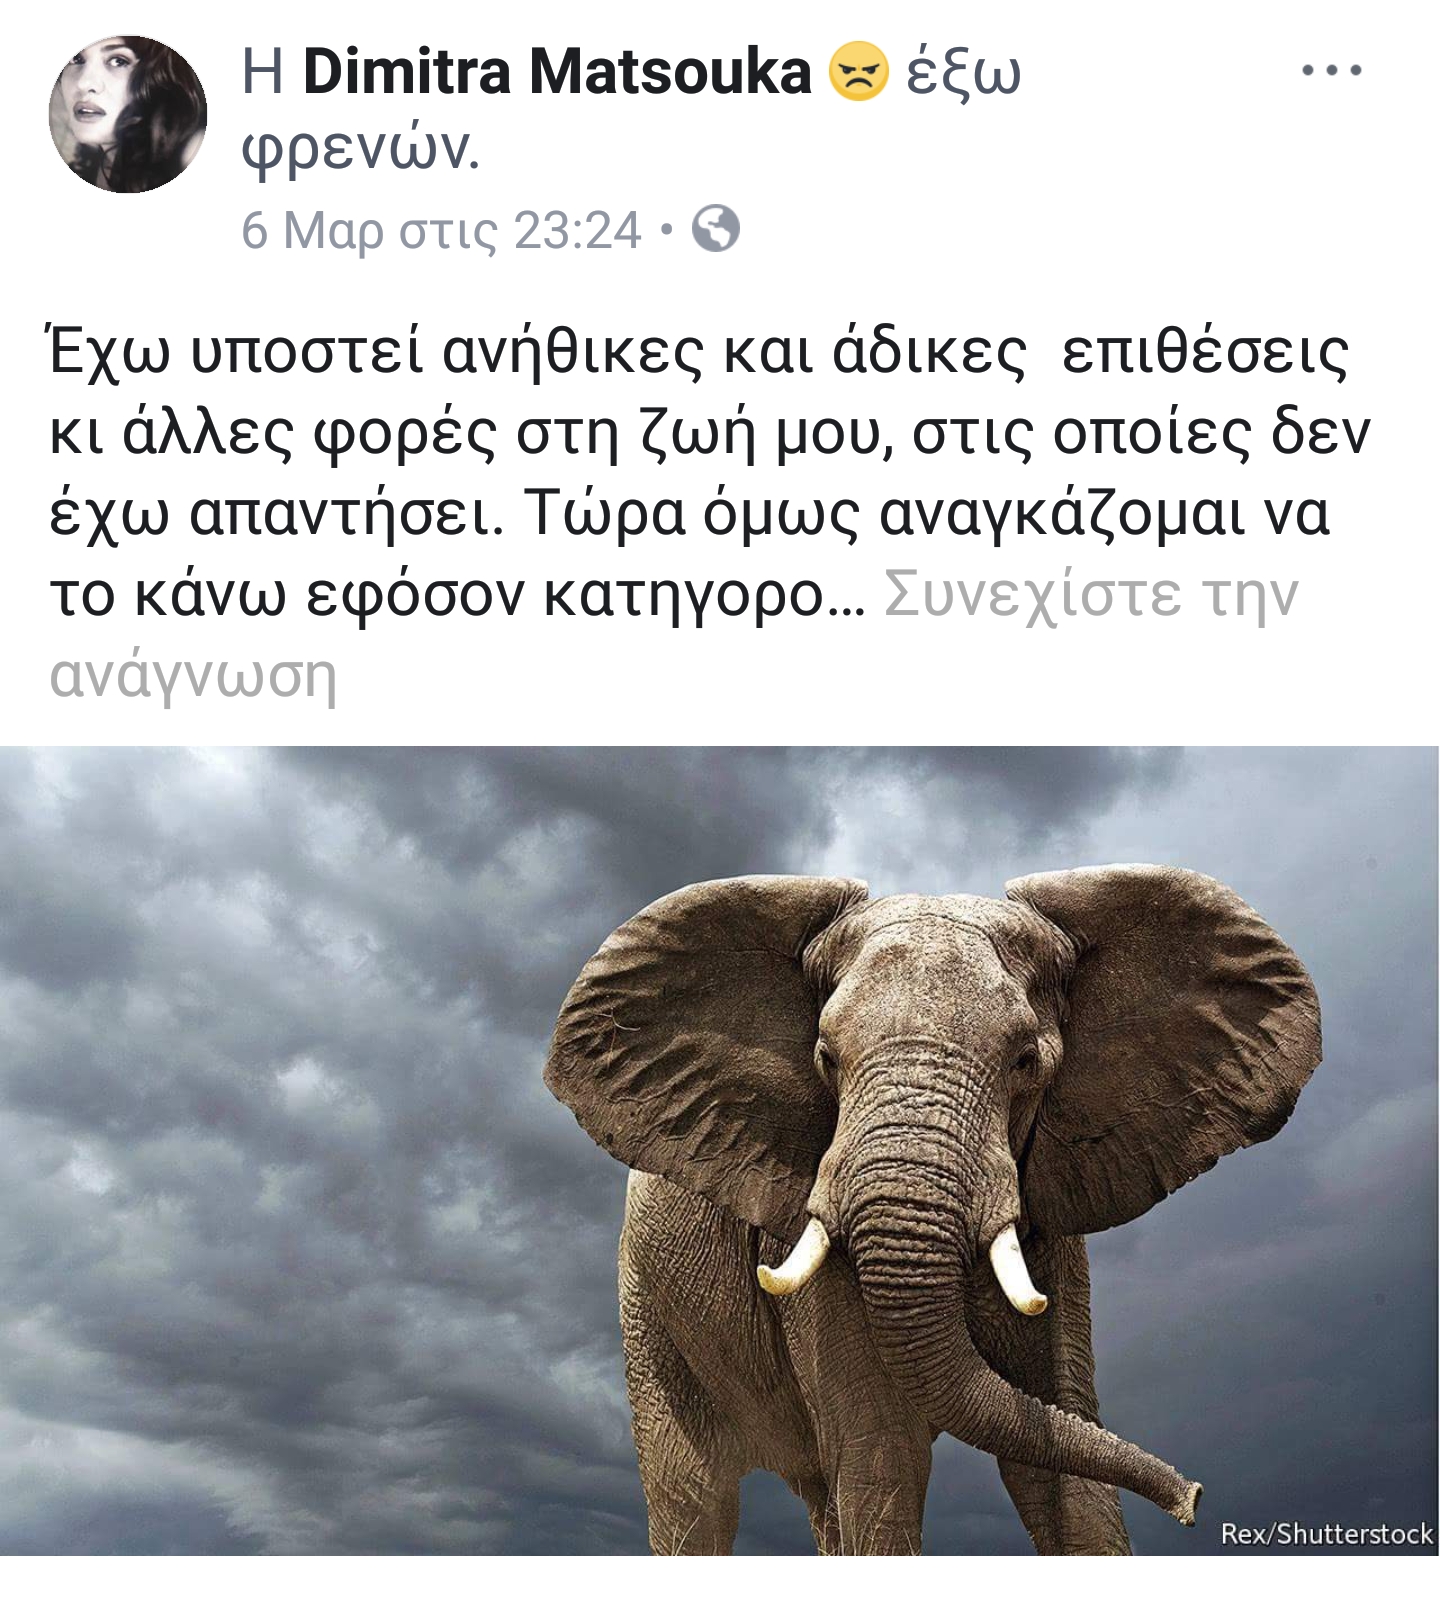 ΤΡΧ_ΜΑΤΣΟΥΚΑ_ΣΧΟΛΙΟ_FB